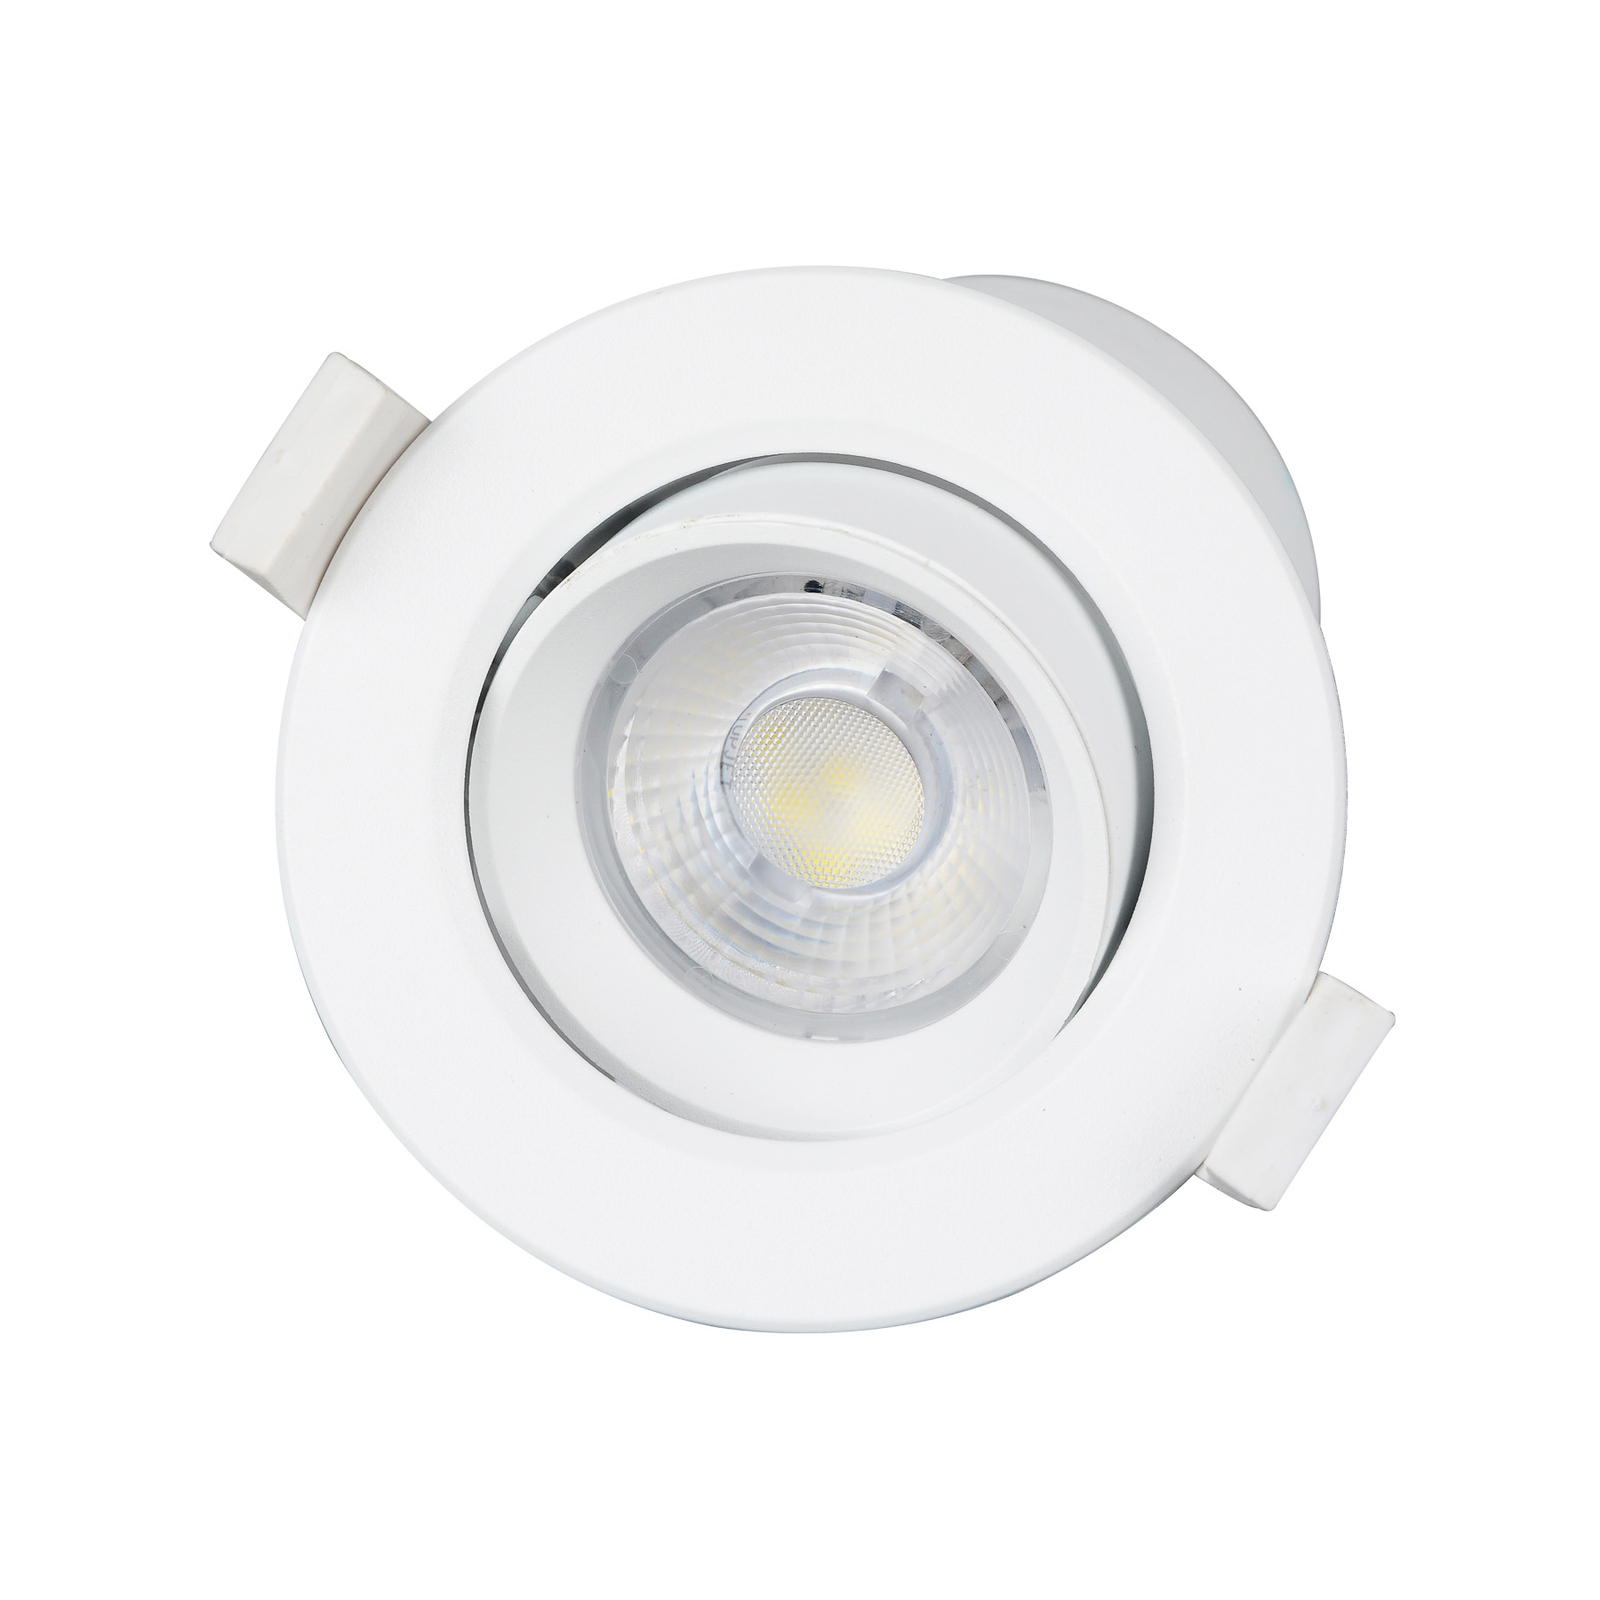 Prios lampe encastrable LED Shima, blanc, 7W, 3000K, par 10, intensité